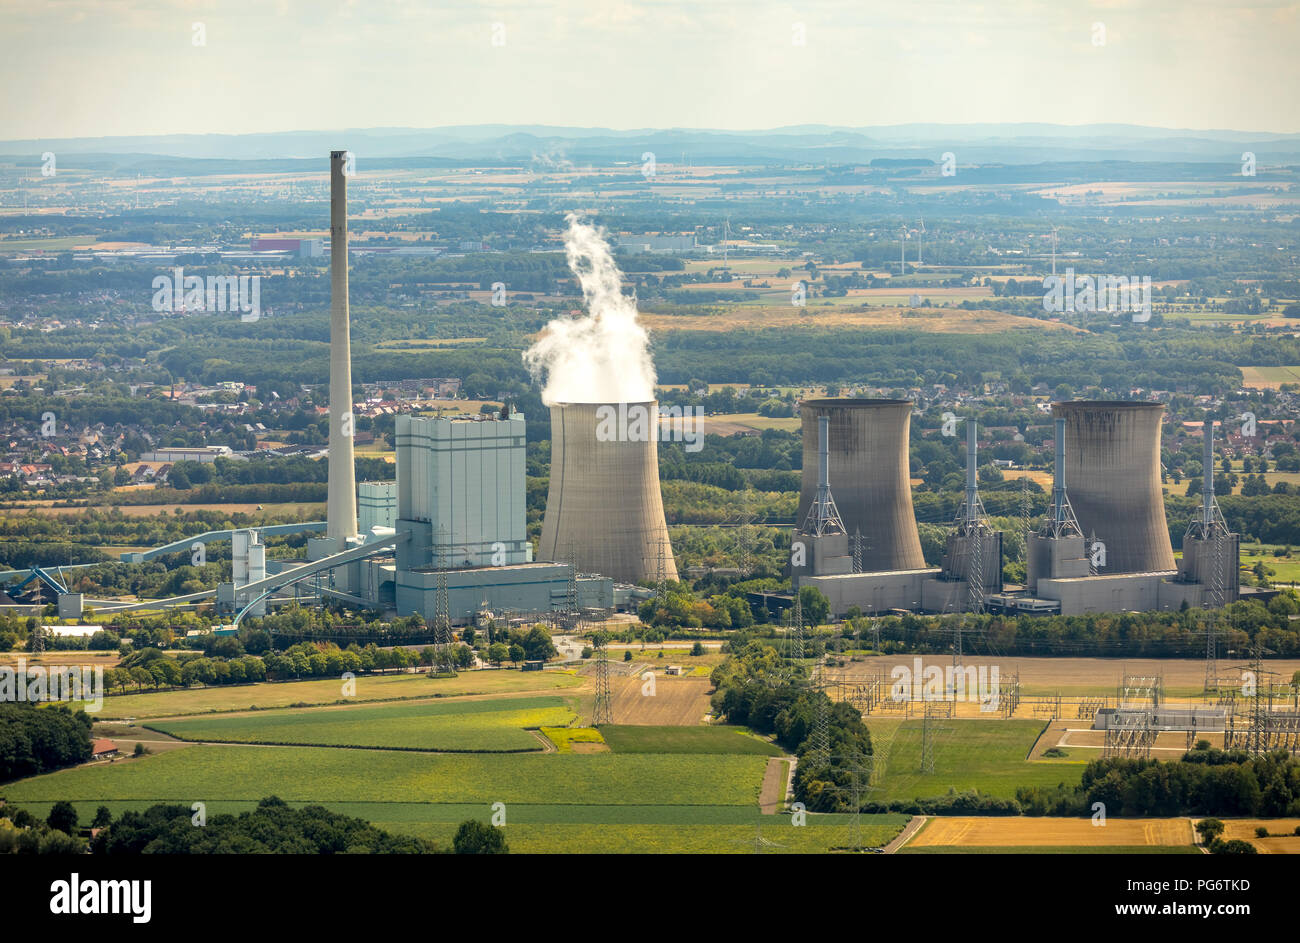 Gersteinwerk, combinato di potenza vapore impianto di carbone e gas naturale, RWE AG nel distretto di Werner Stockum, le torri di raffreddamento, vapore acqueo, emissione chim Foto Stock